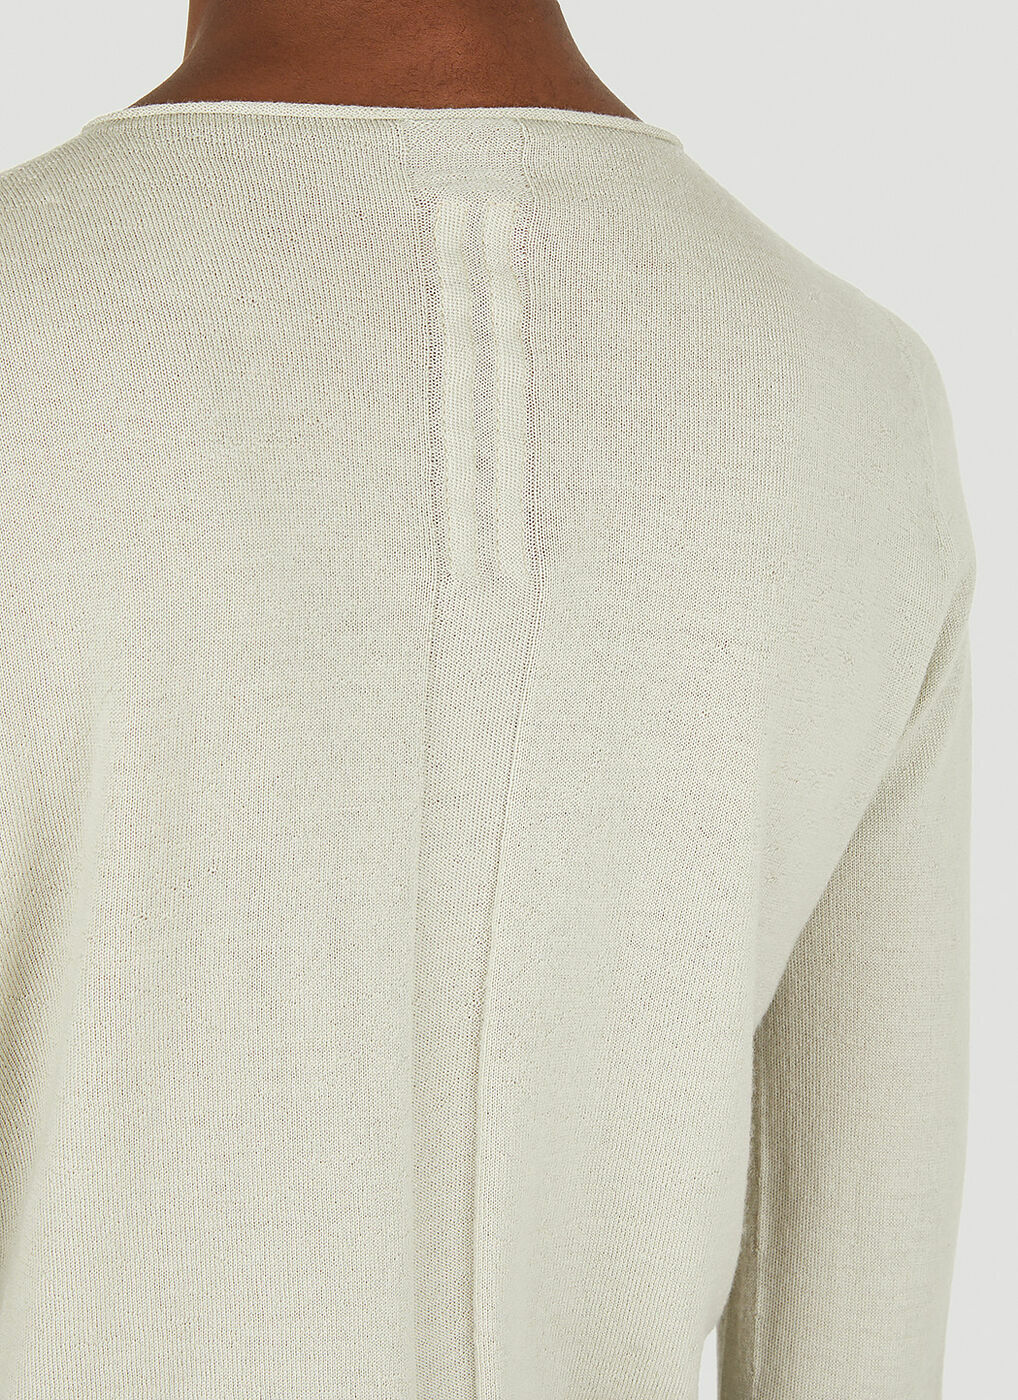 Tonal Panel Sweater in Grey